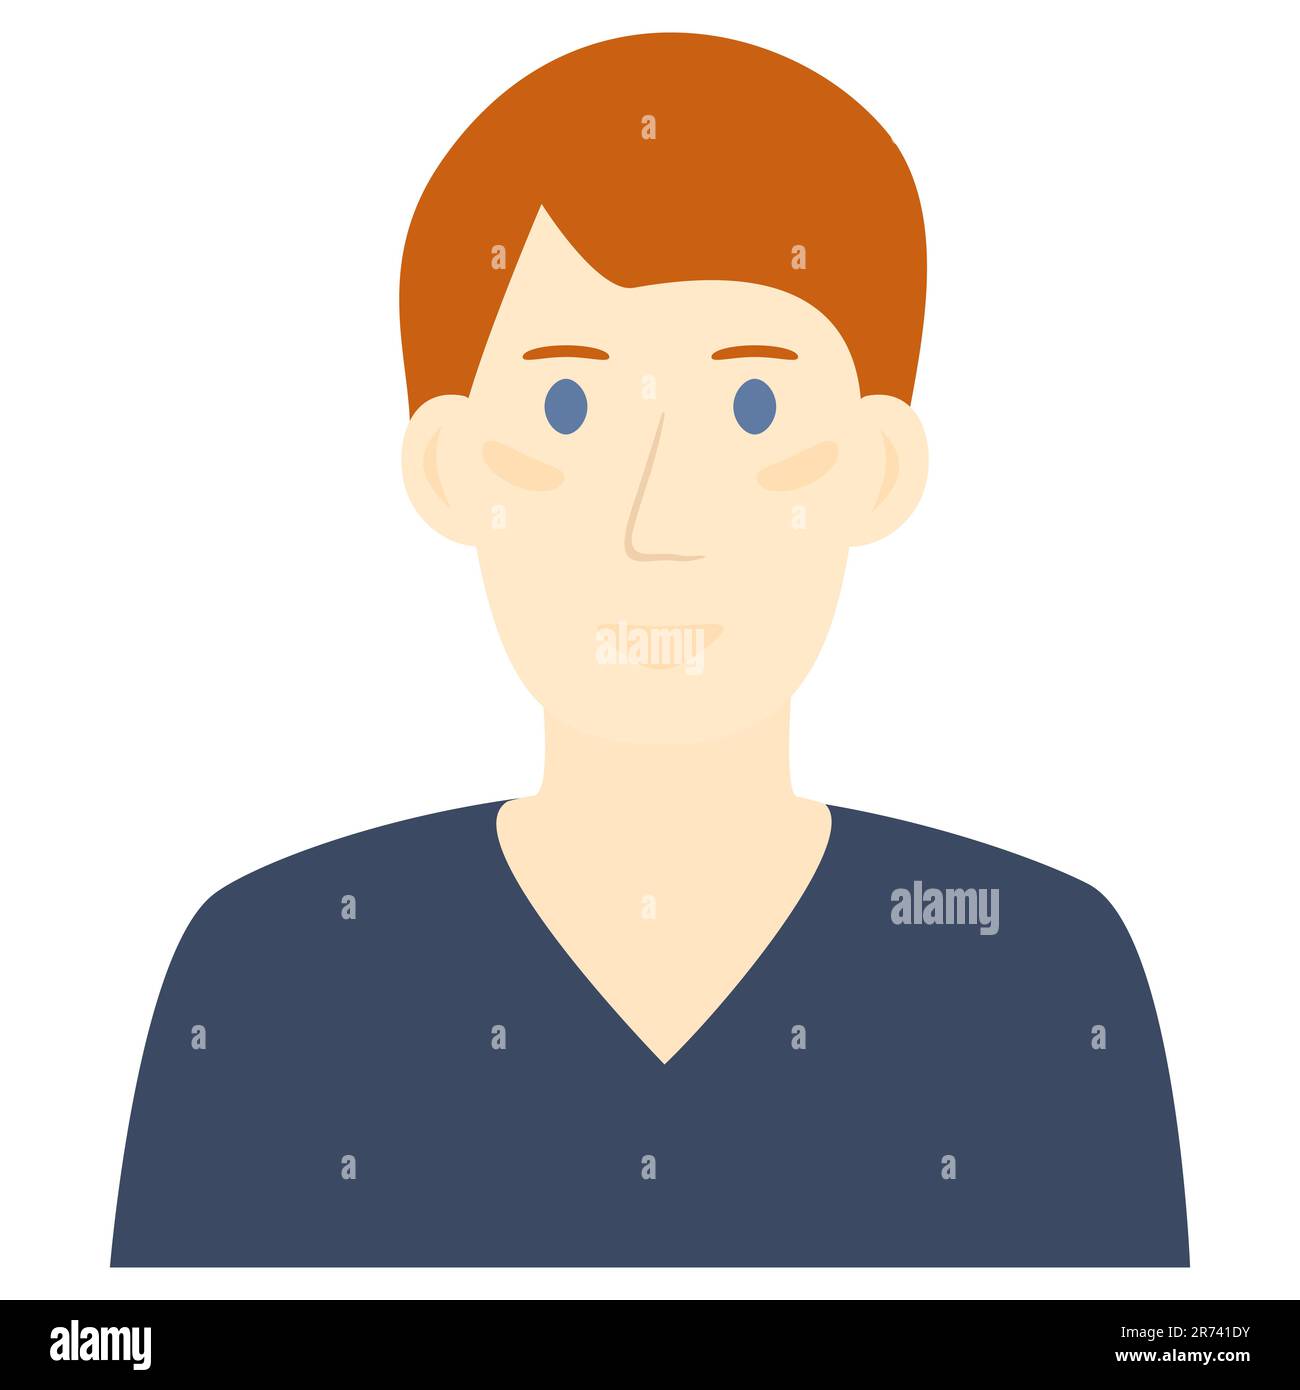 Homme avatar illustration portrait adolescent élément de conception Illustration vectorielle isolé sur fond blanc Illustration de Vecteur